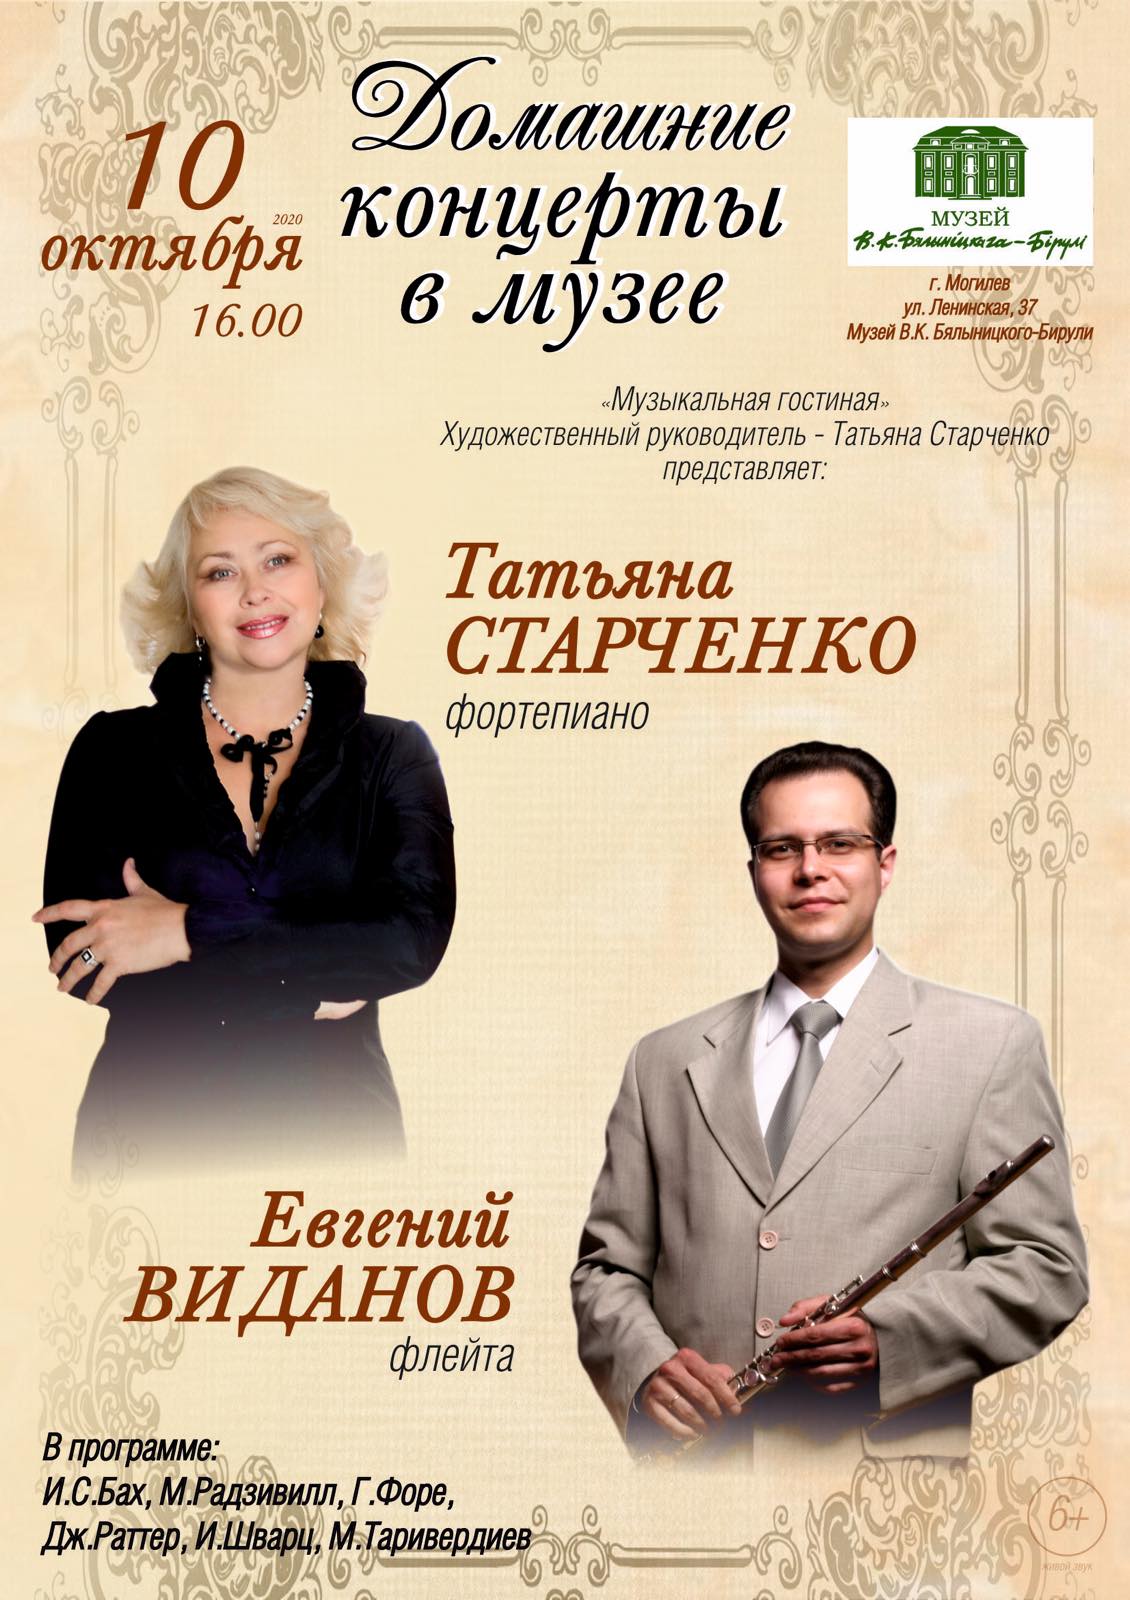 Могилевчан приглашают на концерт классической музыки 10 октября